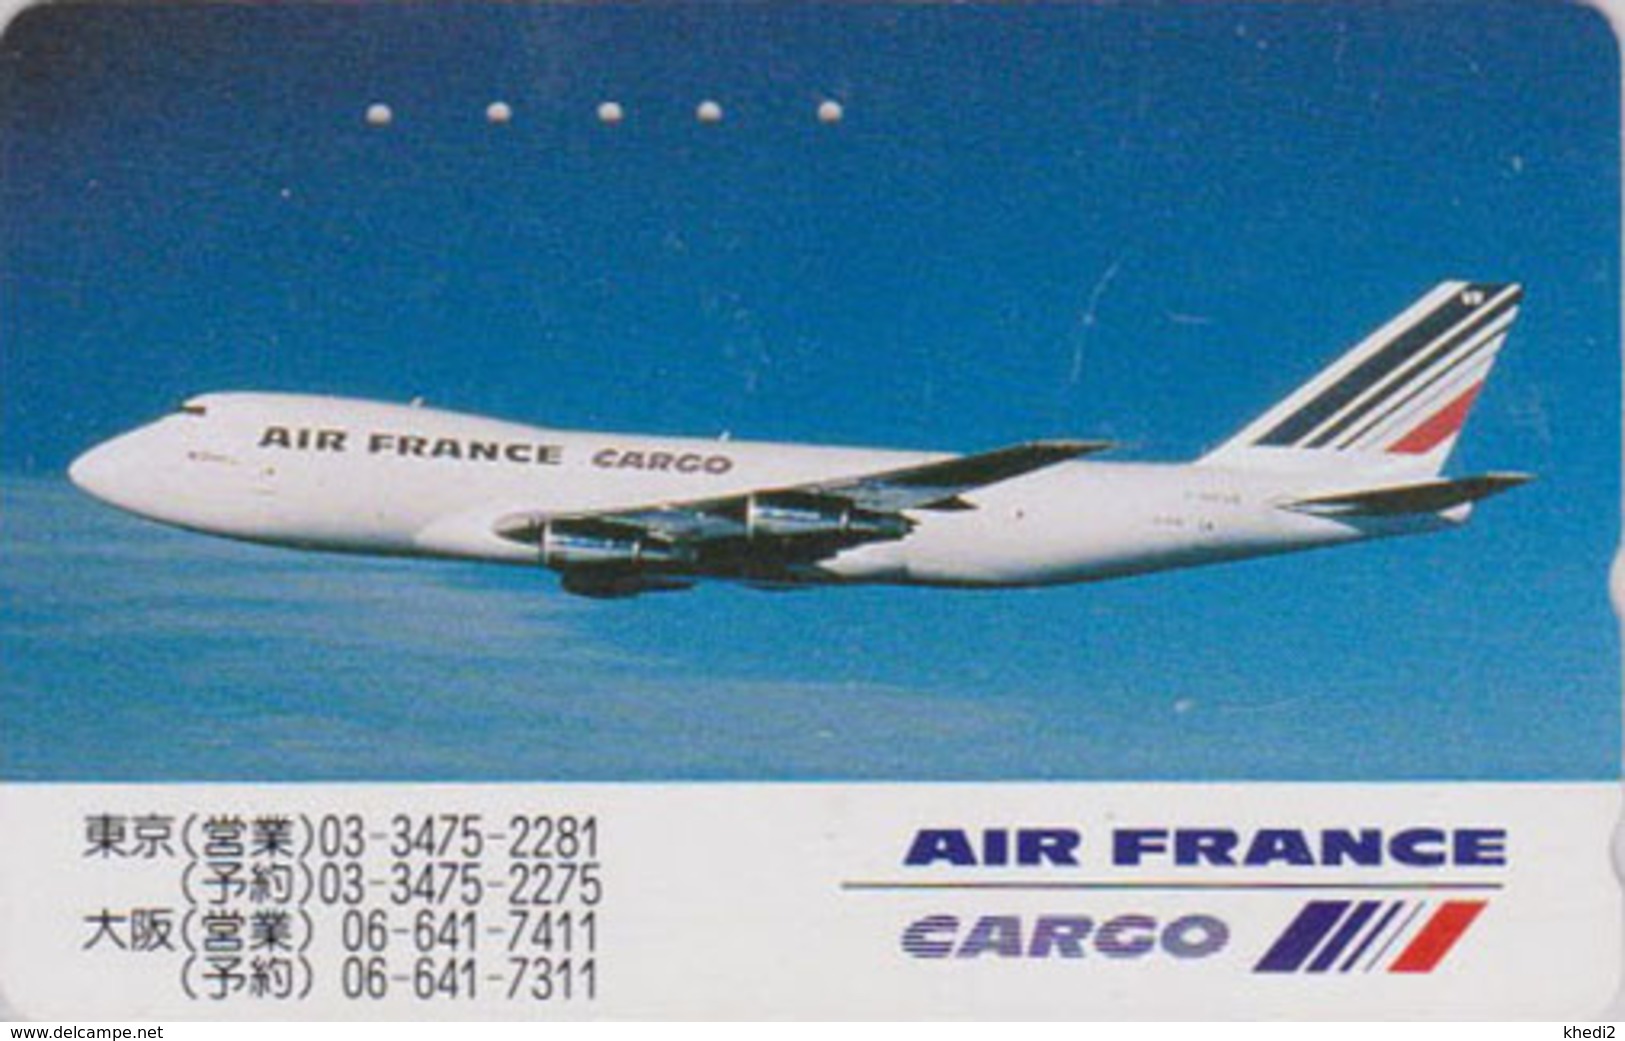 Télécarte Japon / 110-198214 - AIR FRANCE CARGO - AVION - PLANE AIRLINES Japan Phonecard - FLUGZEUG - 2250 - Avions